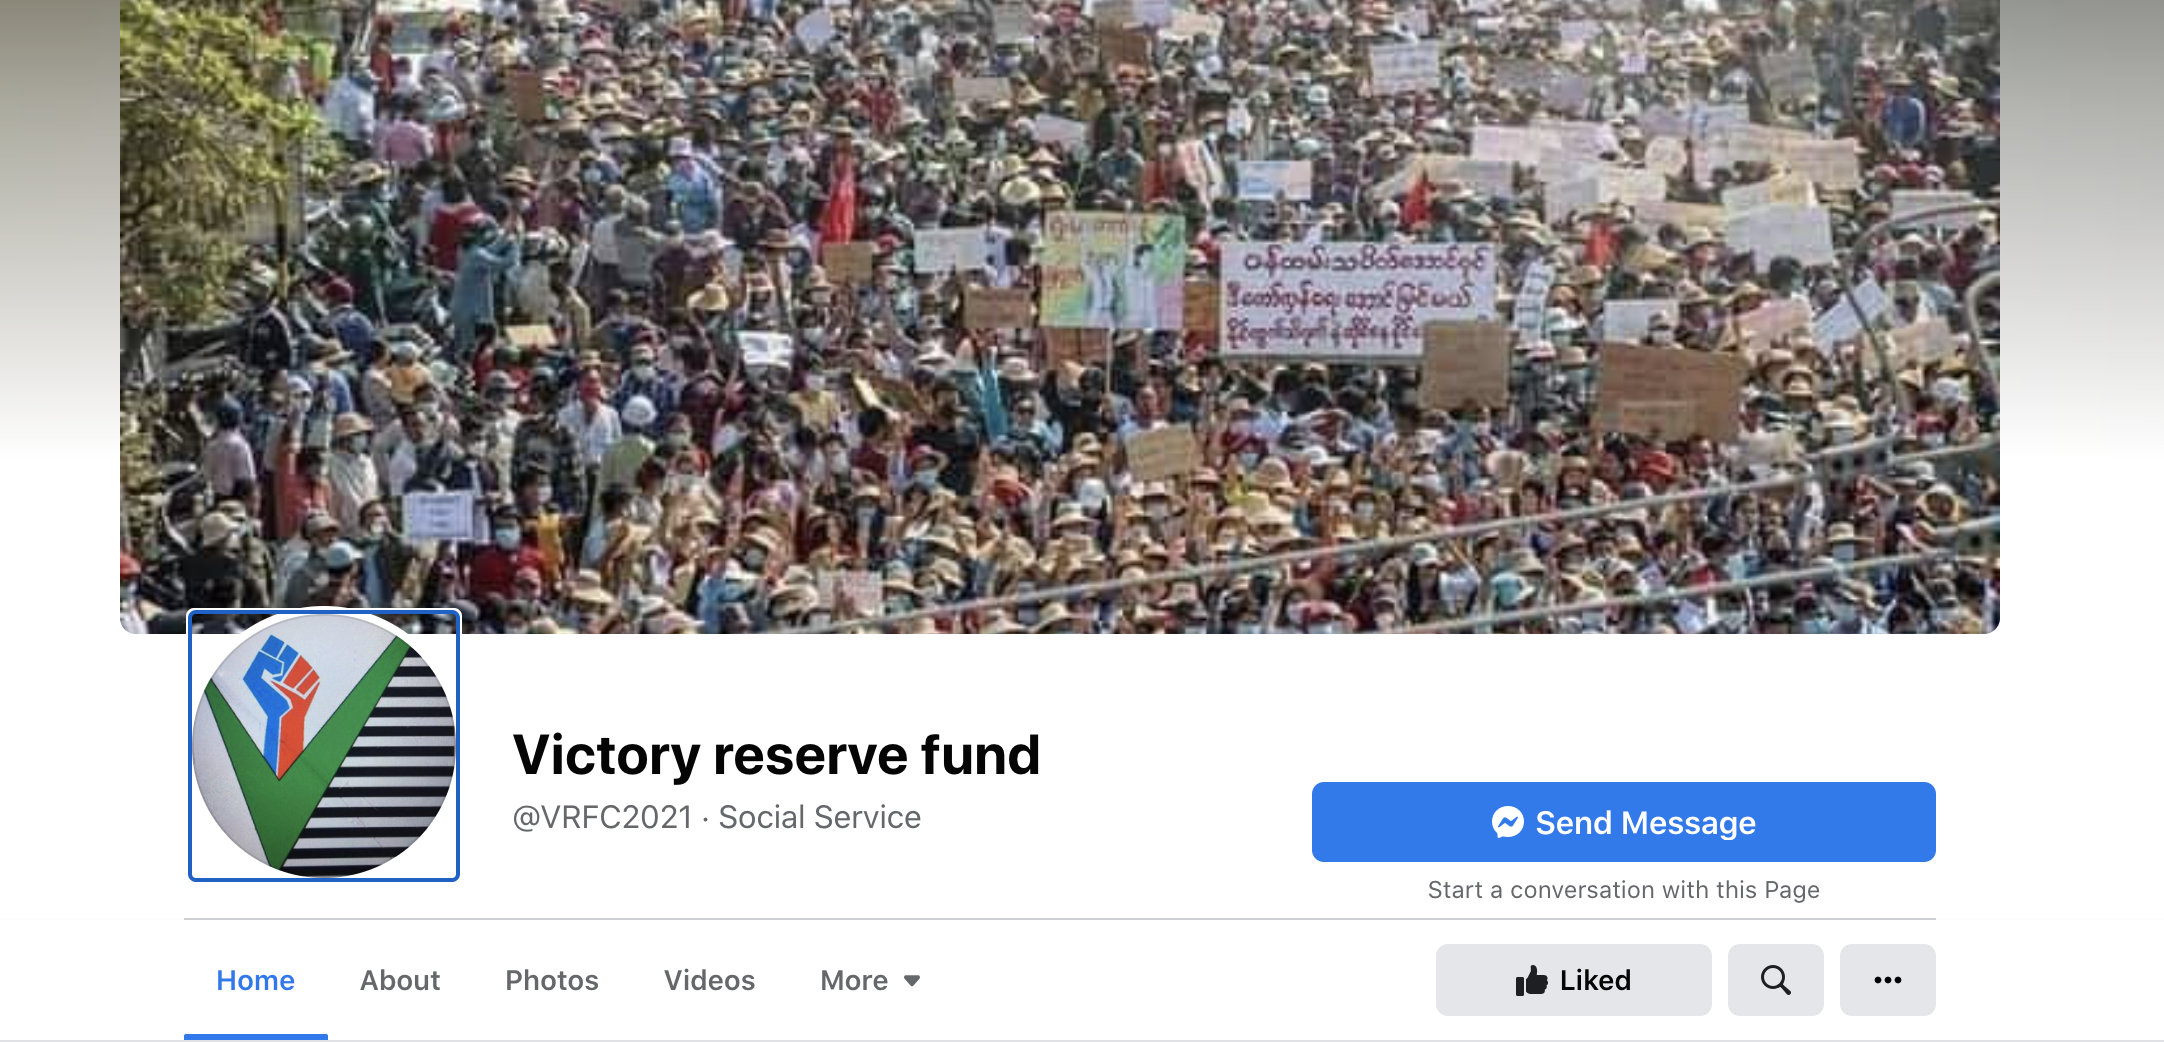 Victory Reserve Fund တာဝန်ရှိသူဖြင့် ဆက်သွယ်မေးမြန်းခြင်း